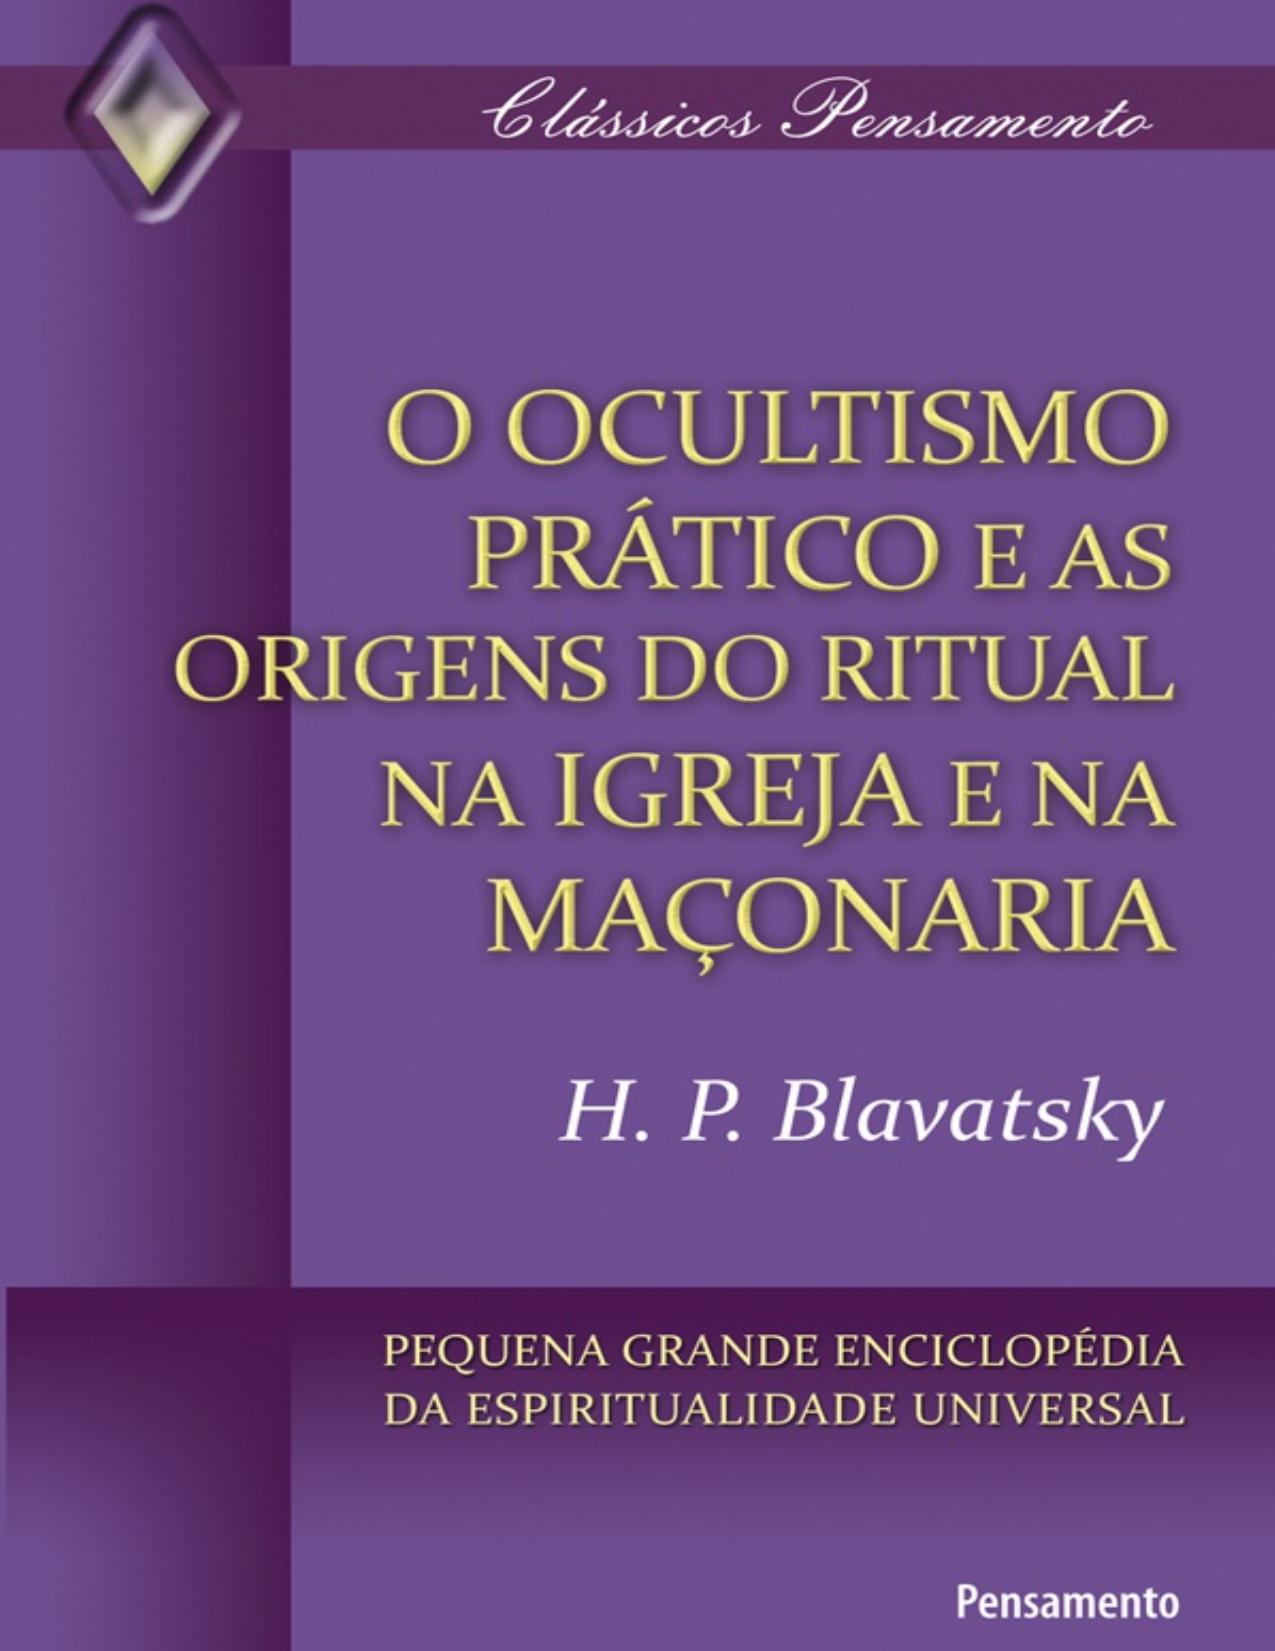 O Ocultismo Prático e As Origens Do Ritual Na Igreja e Na Maçonaria